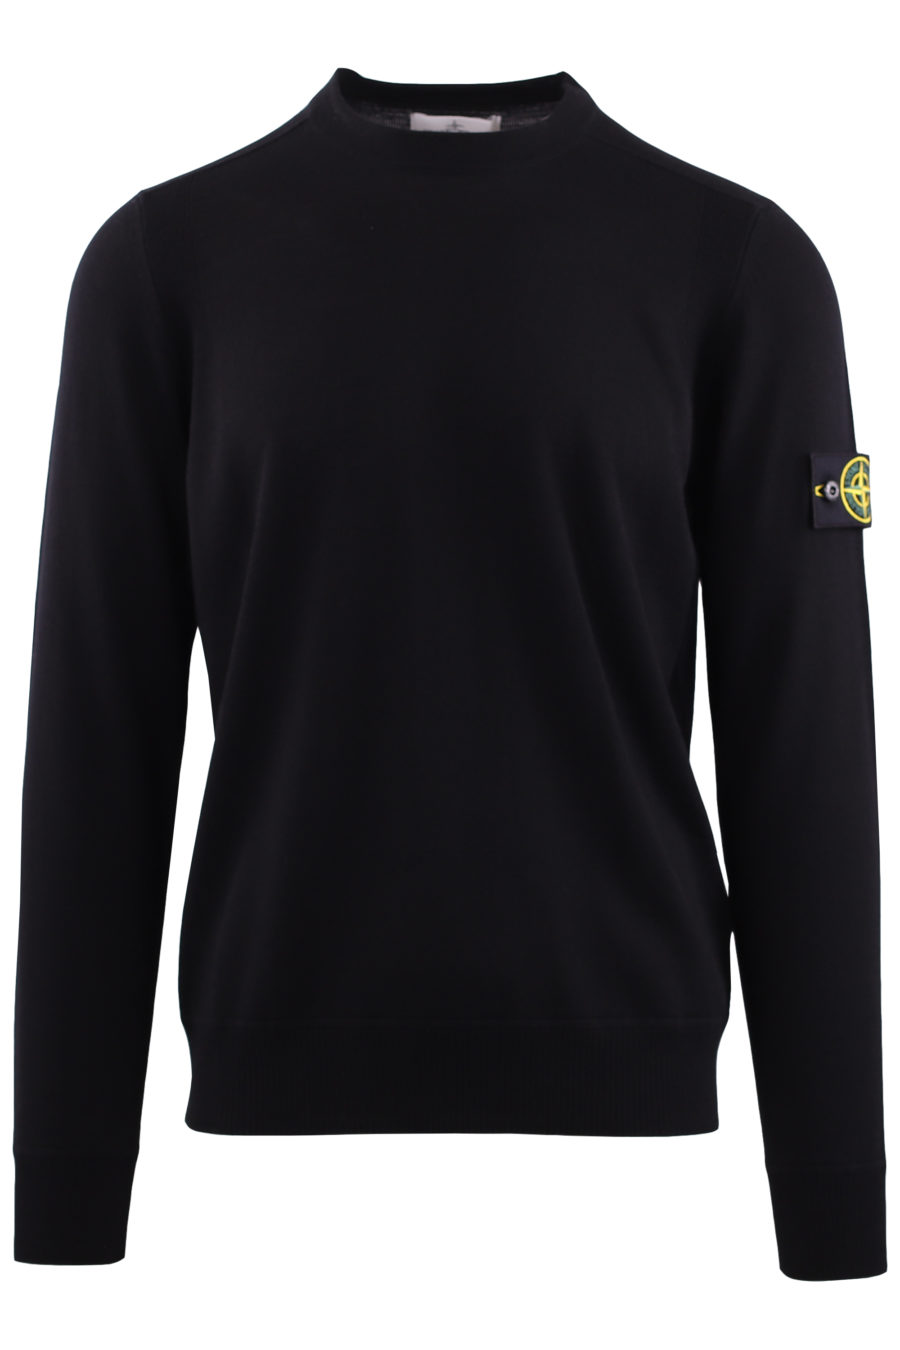 Jersey negro de lana con logo parche - IMG 7141